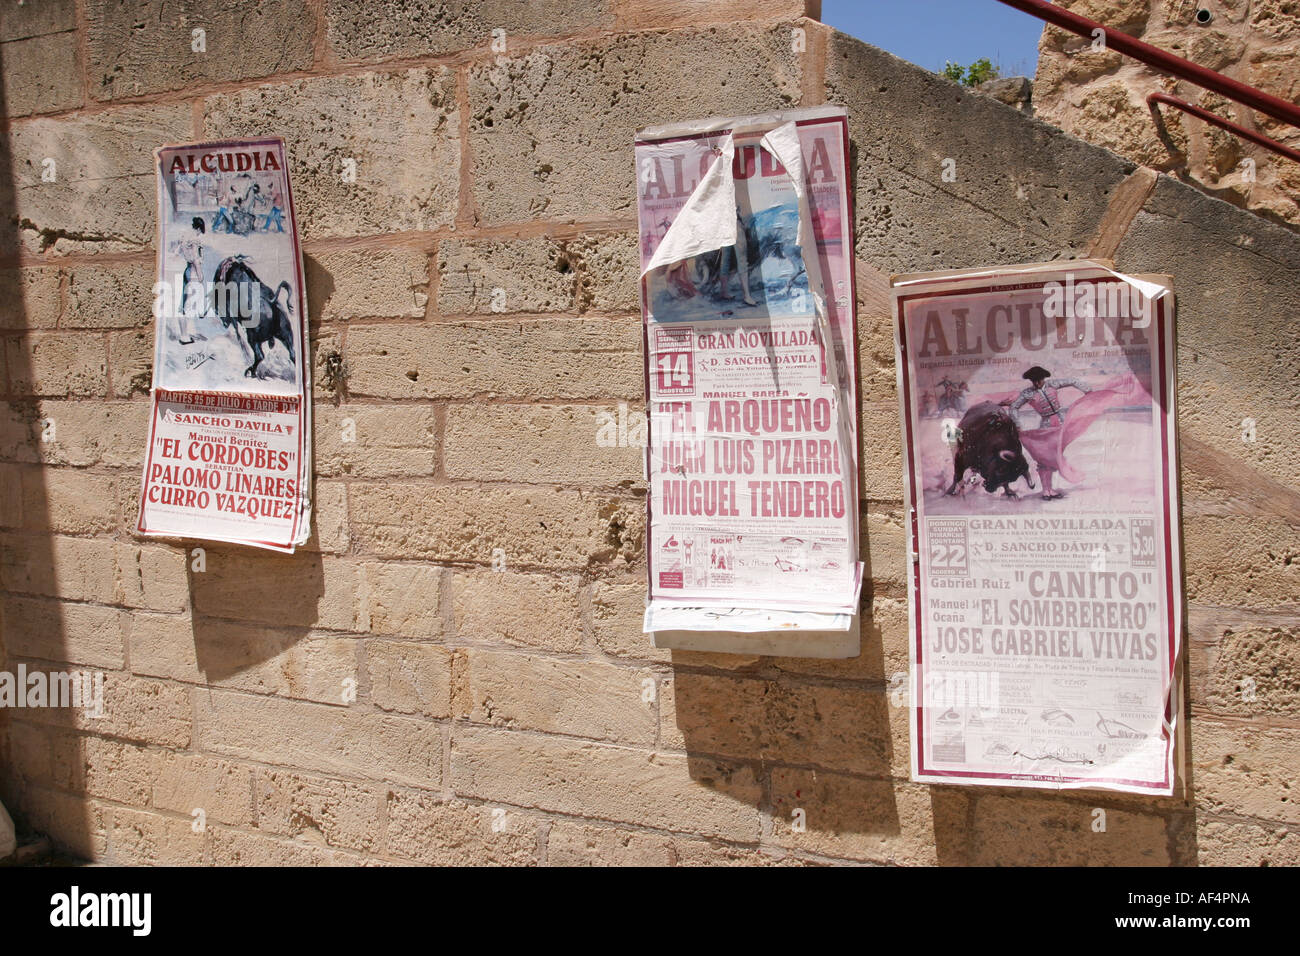 Des affiches à l'arène de corrida dans la vieille ville d'Alcudia de l'île de Majorque Espagne Banque D'Images